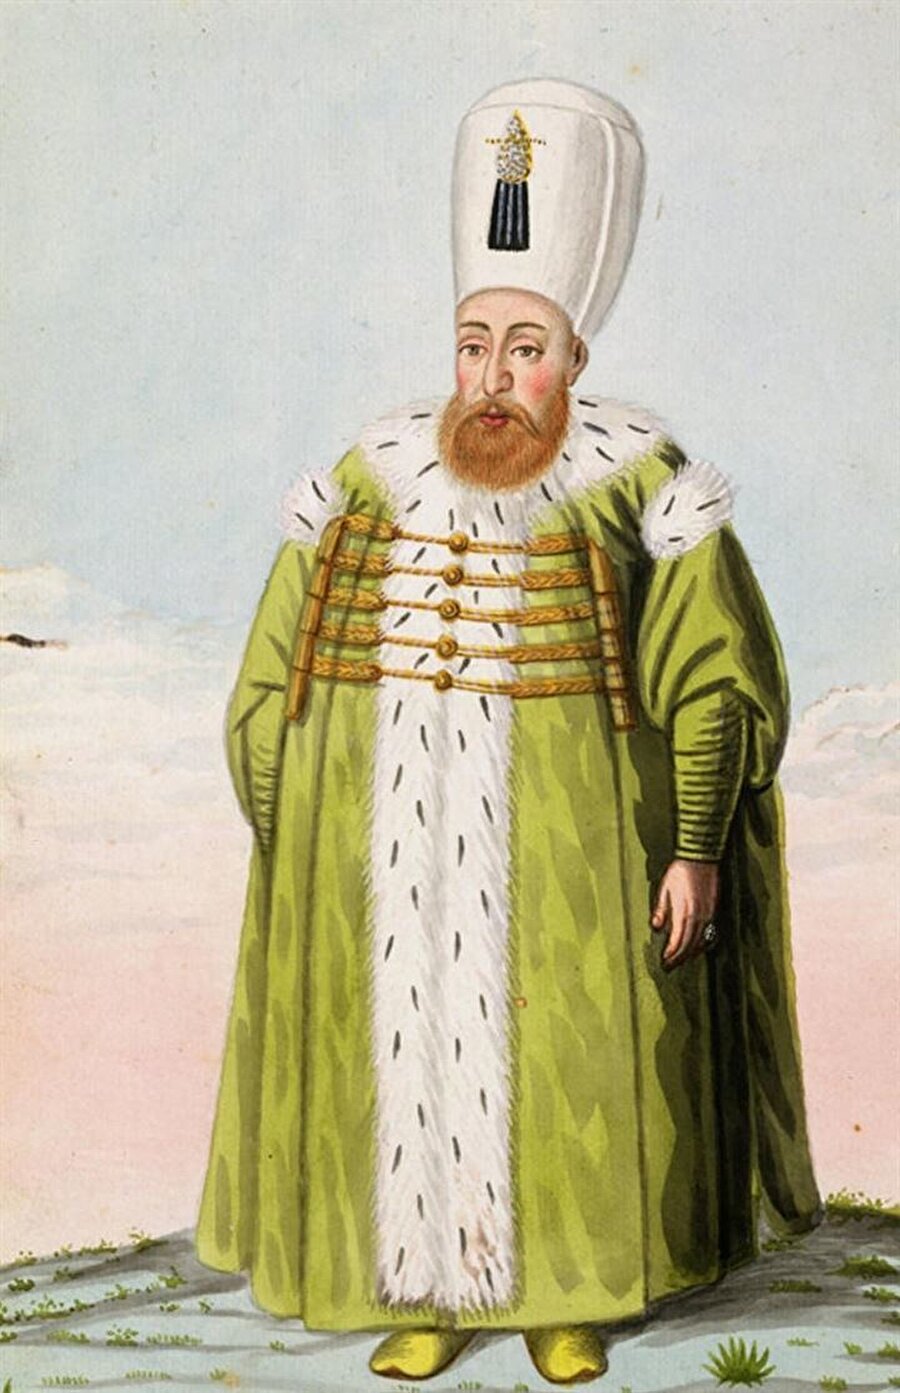 I. Mustafa (1617 – 1618 / 1622 – 1623)

                                    Sultan Birinci Mustafa, 1592 yılında, Manisa’da doğdu. Babası Sultan Üçüncü Mehmed, annesi Handan Sultan’dır. Sultan Birinci Mustafa güzel yüzlü, seyrek sakallı, sarı benizli ve iri gözlü bir padişahtı. İki defa padişahlık yaptı. Sinirli bir yapıya sahipti. Sultan Birinci Mustafa, ağabeyi Sultan Birinci Ahmed’in padişahlığı süresince, on dört yıl sarayın bir odasında hapis hayatı yaşadı. Sultan Birinci Ahmed, tahta geçtiğinde kardeşini öldürtmemiş, ancak sarayda mahpus tutmuştur. Kafes hayatı denilen bu süre sonunda Sultan Birinci Mustafa, Osmanlı hanedanının en büyük erkek evlâdı olması dolayısıyla tahta çıkarılmış fakat kısa sürede dengesiz hareketleri görüldüğünden ulemâ, asker ve devlet erkânının ittifakı ile hal (tahttan indirme) edilmiştir. Sultan Genç Osman’ın tahttan indirilip katlinden sonra 2. kez tahta çıkmışsa da bir buçuk yıl sonra aklî dengesizliği nedeniyle tekrar tahttan indirilmesi icab etmiştir.
                                